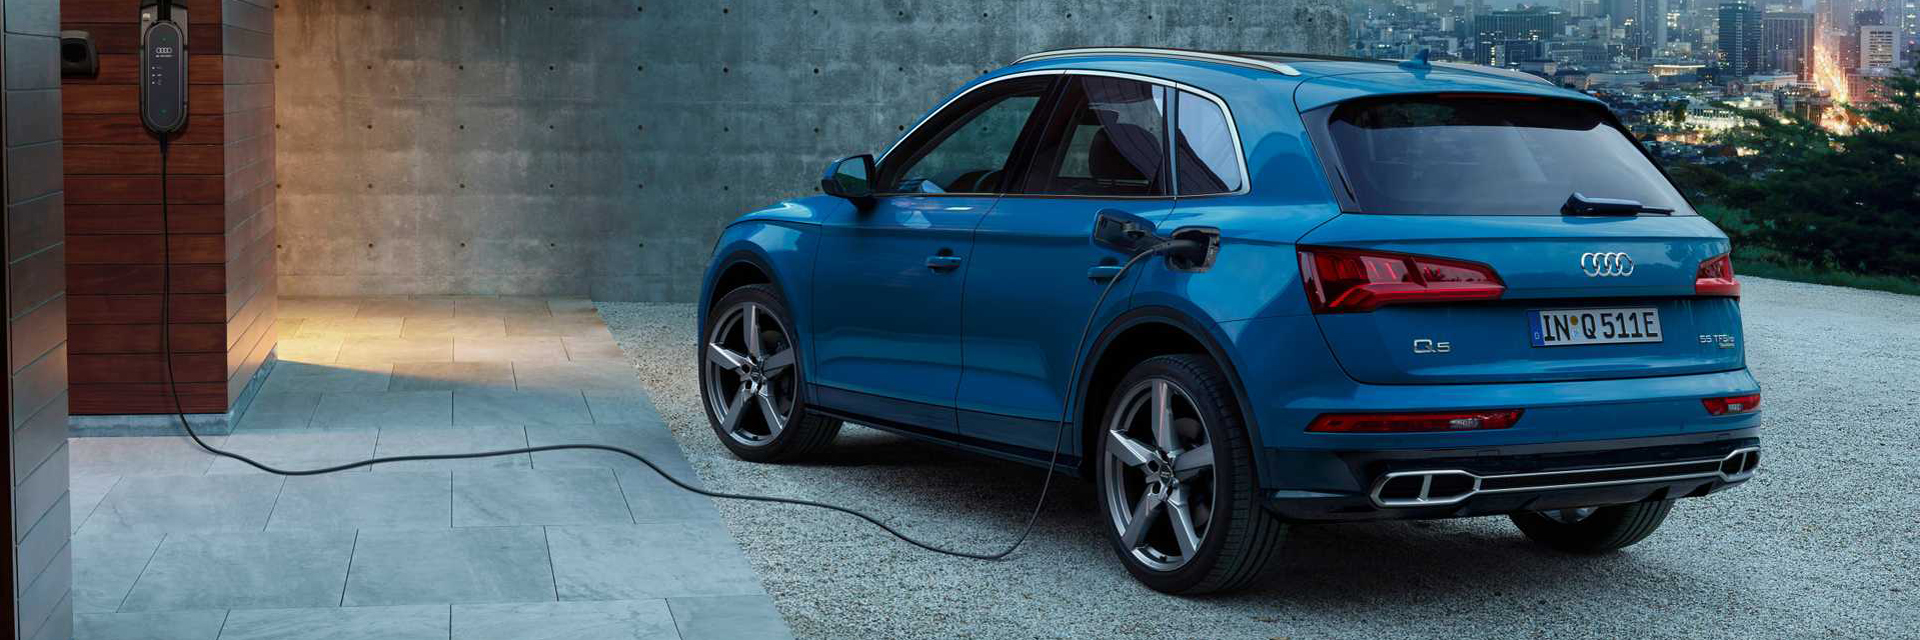 Audi Q5 - carros novos, carros km0, carros serviço, carros usados